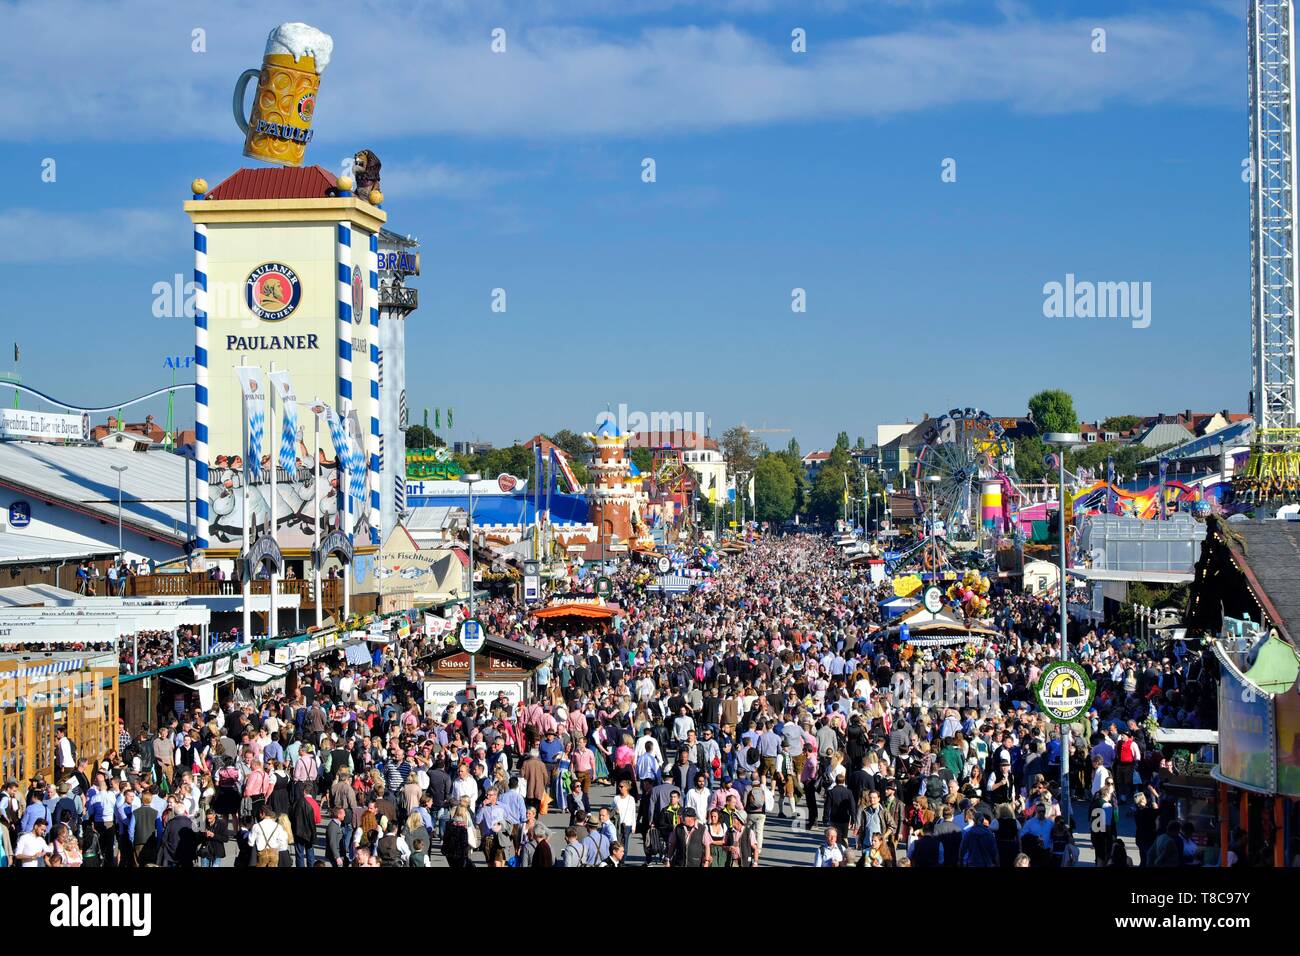 Vue de la tour de Paulaner, des foules de gens, entassés entre les cabines, l'Oktoberfest, Munich, Haute-Bavière, Bavière, Allemagne Banque D'Images